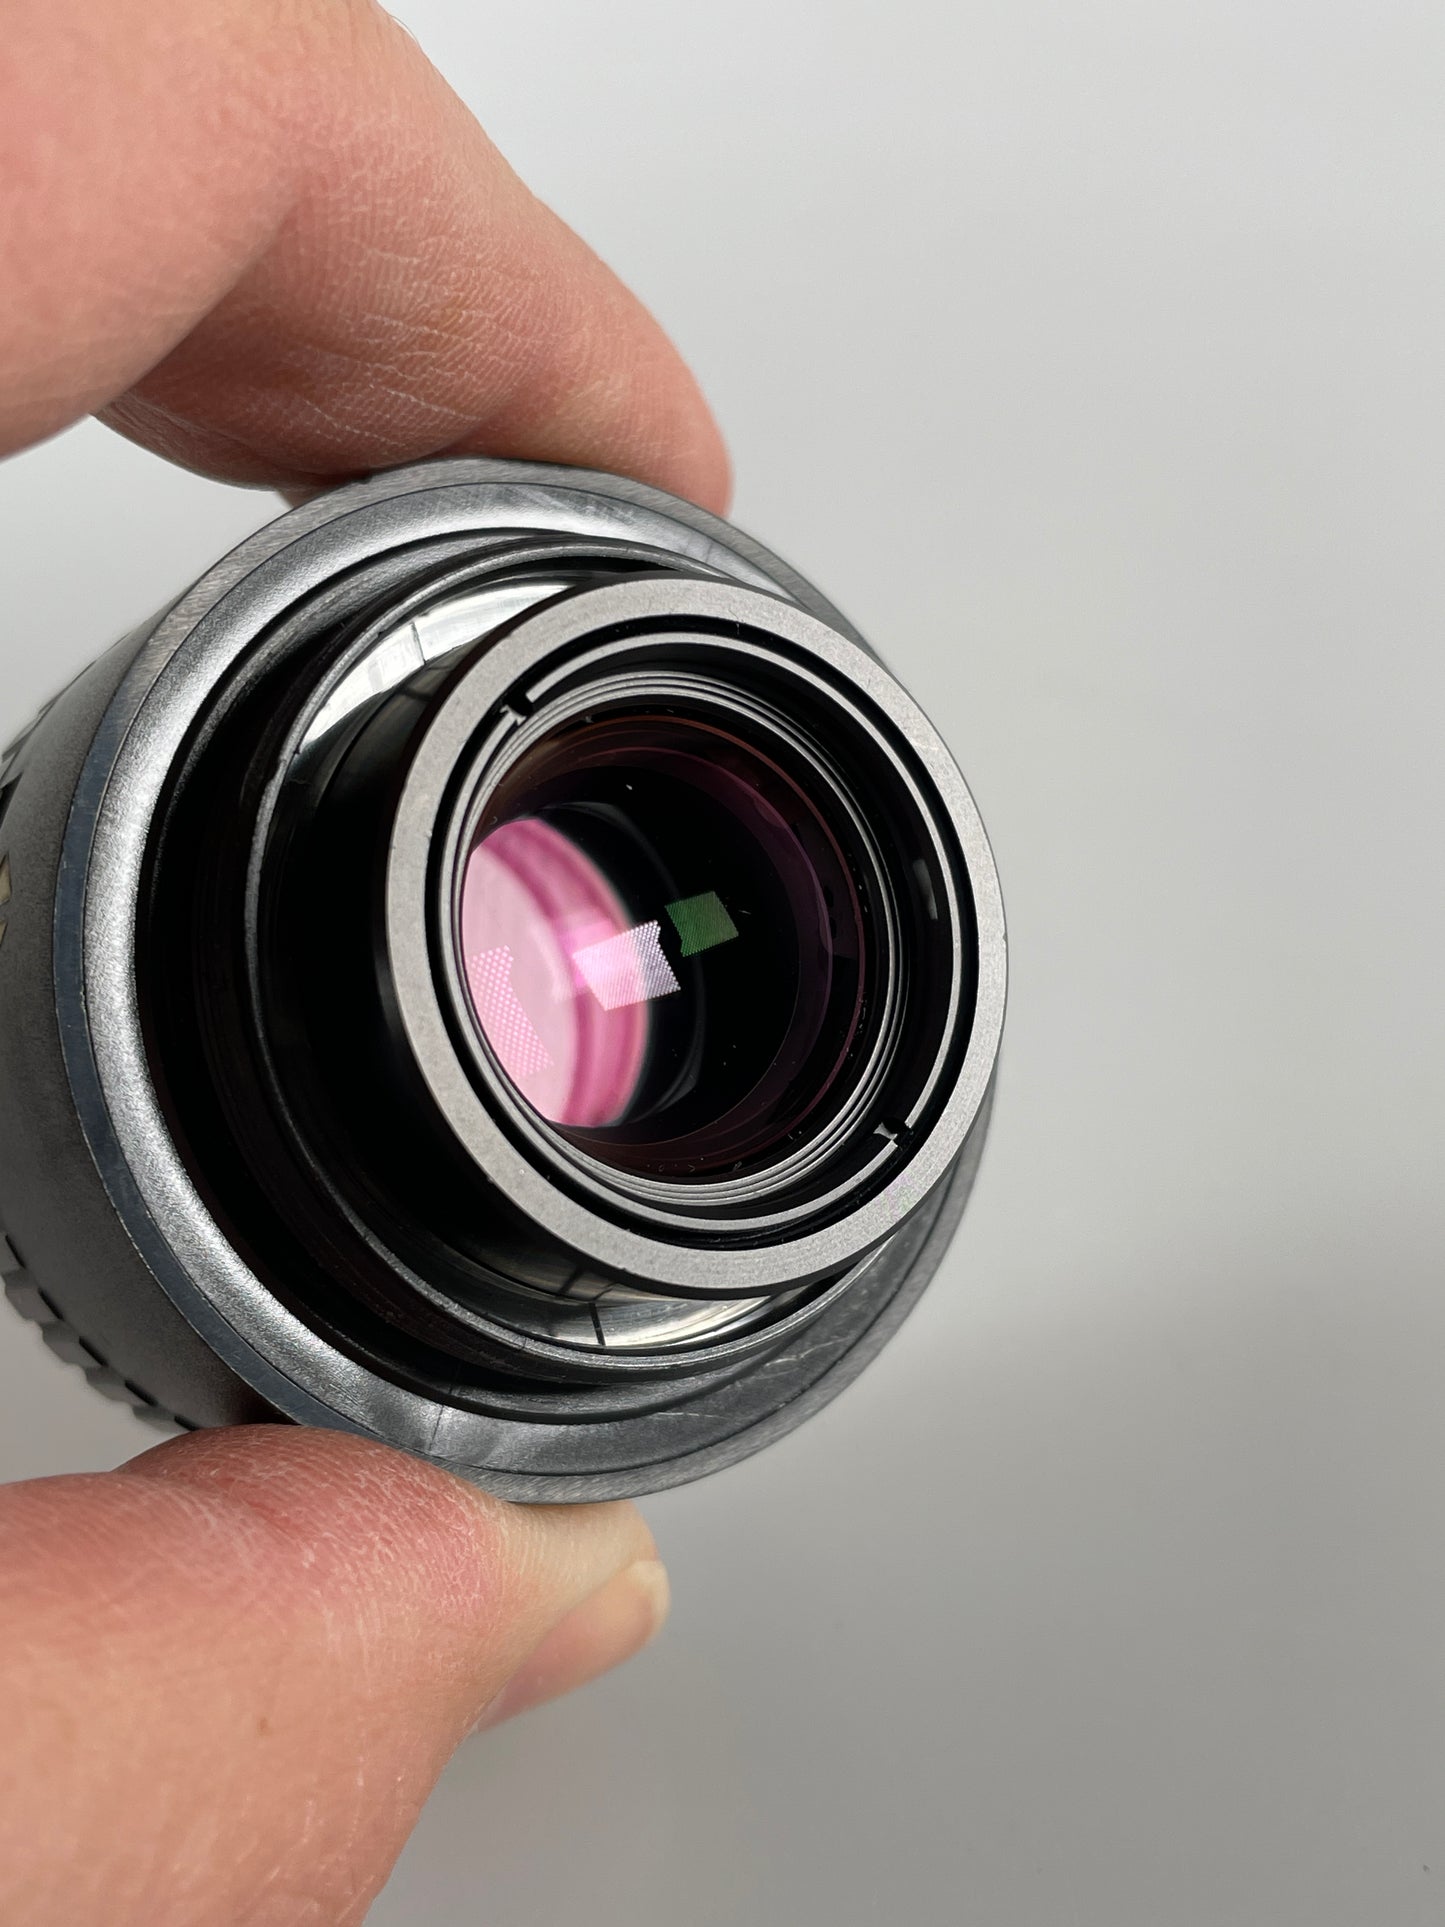 Beseler-HD 50mm f2.8 enlarger lens (Rodenstock Rodagon)